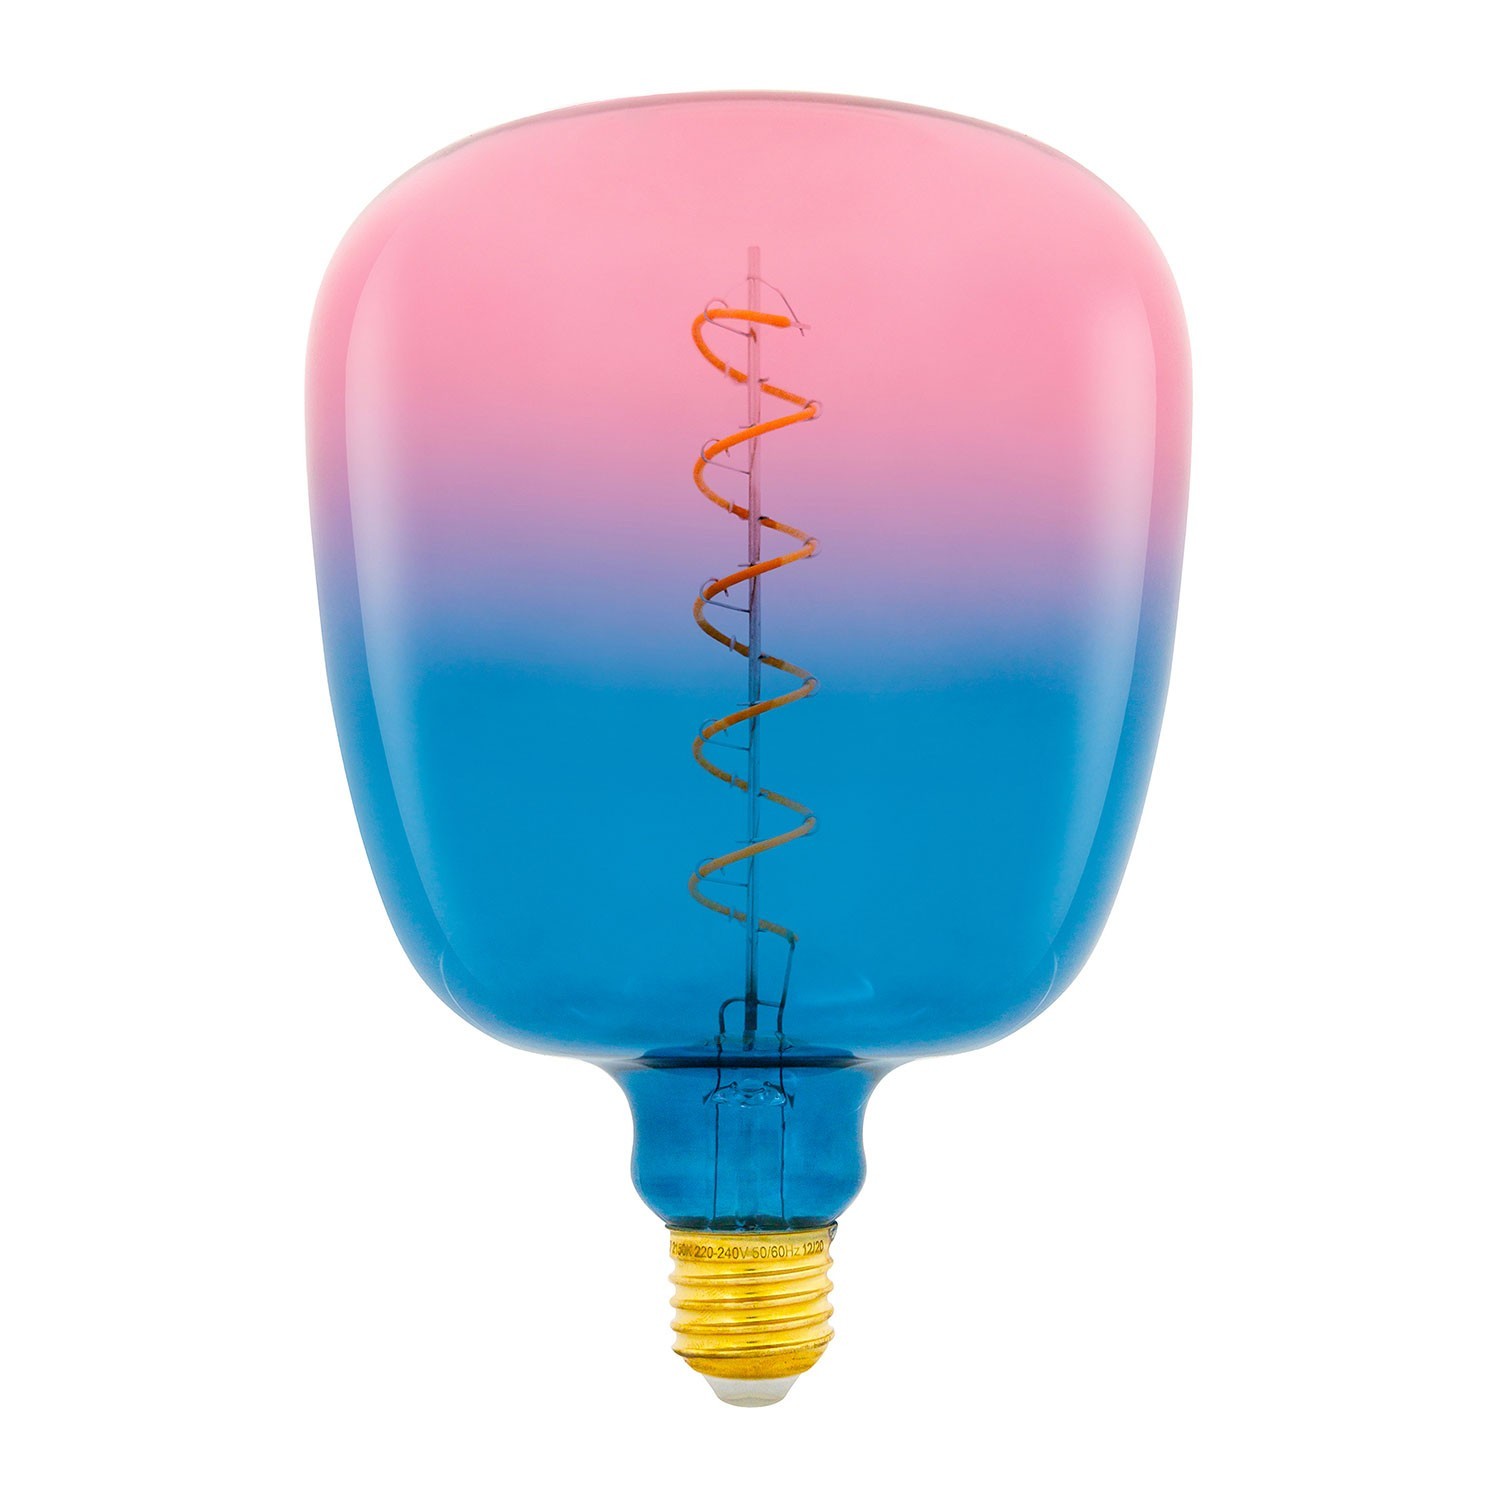 Ampoule LED XXL Bona série Pastel, couleur Rêve (Dream), filament spirale  5W E27 Dimmable 2150K